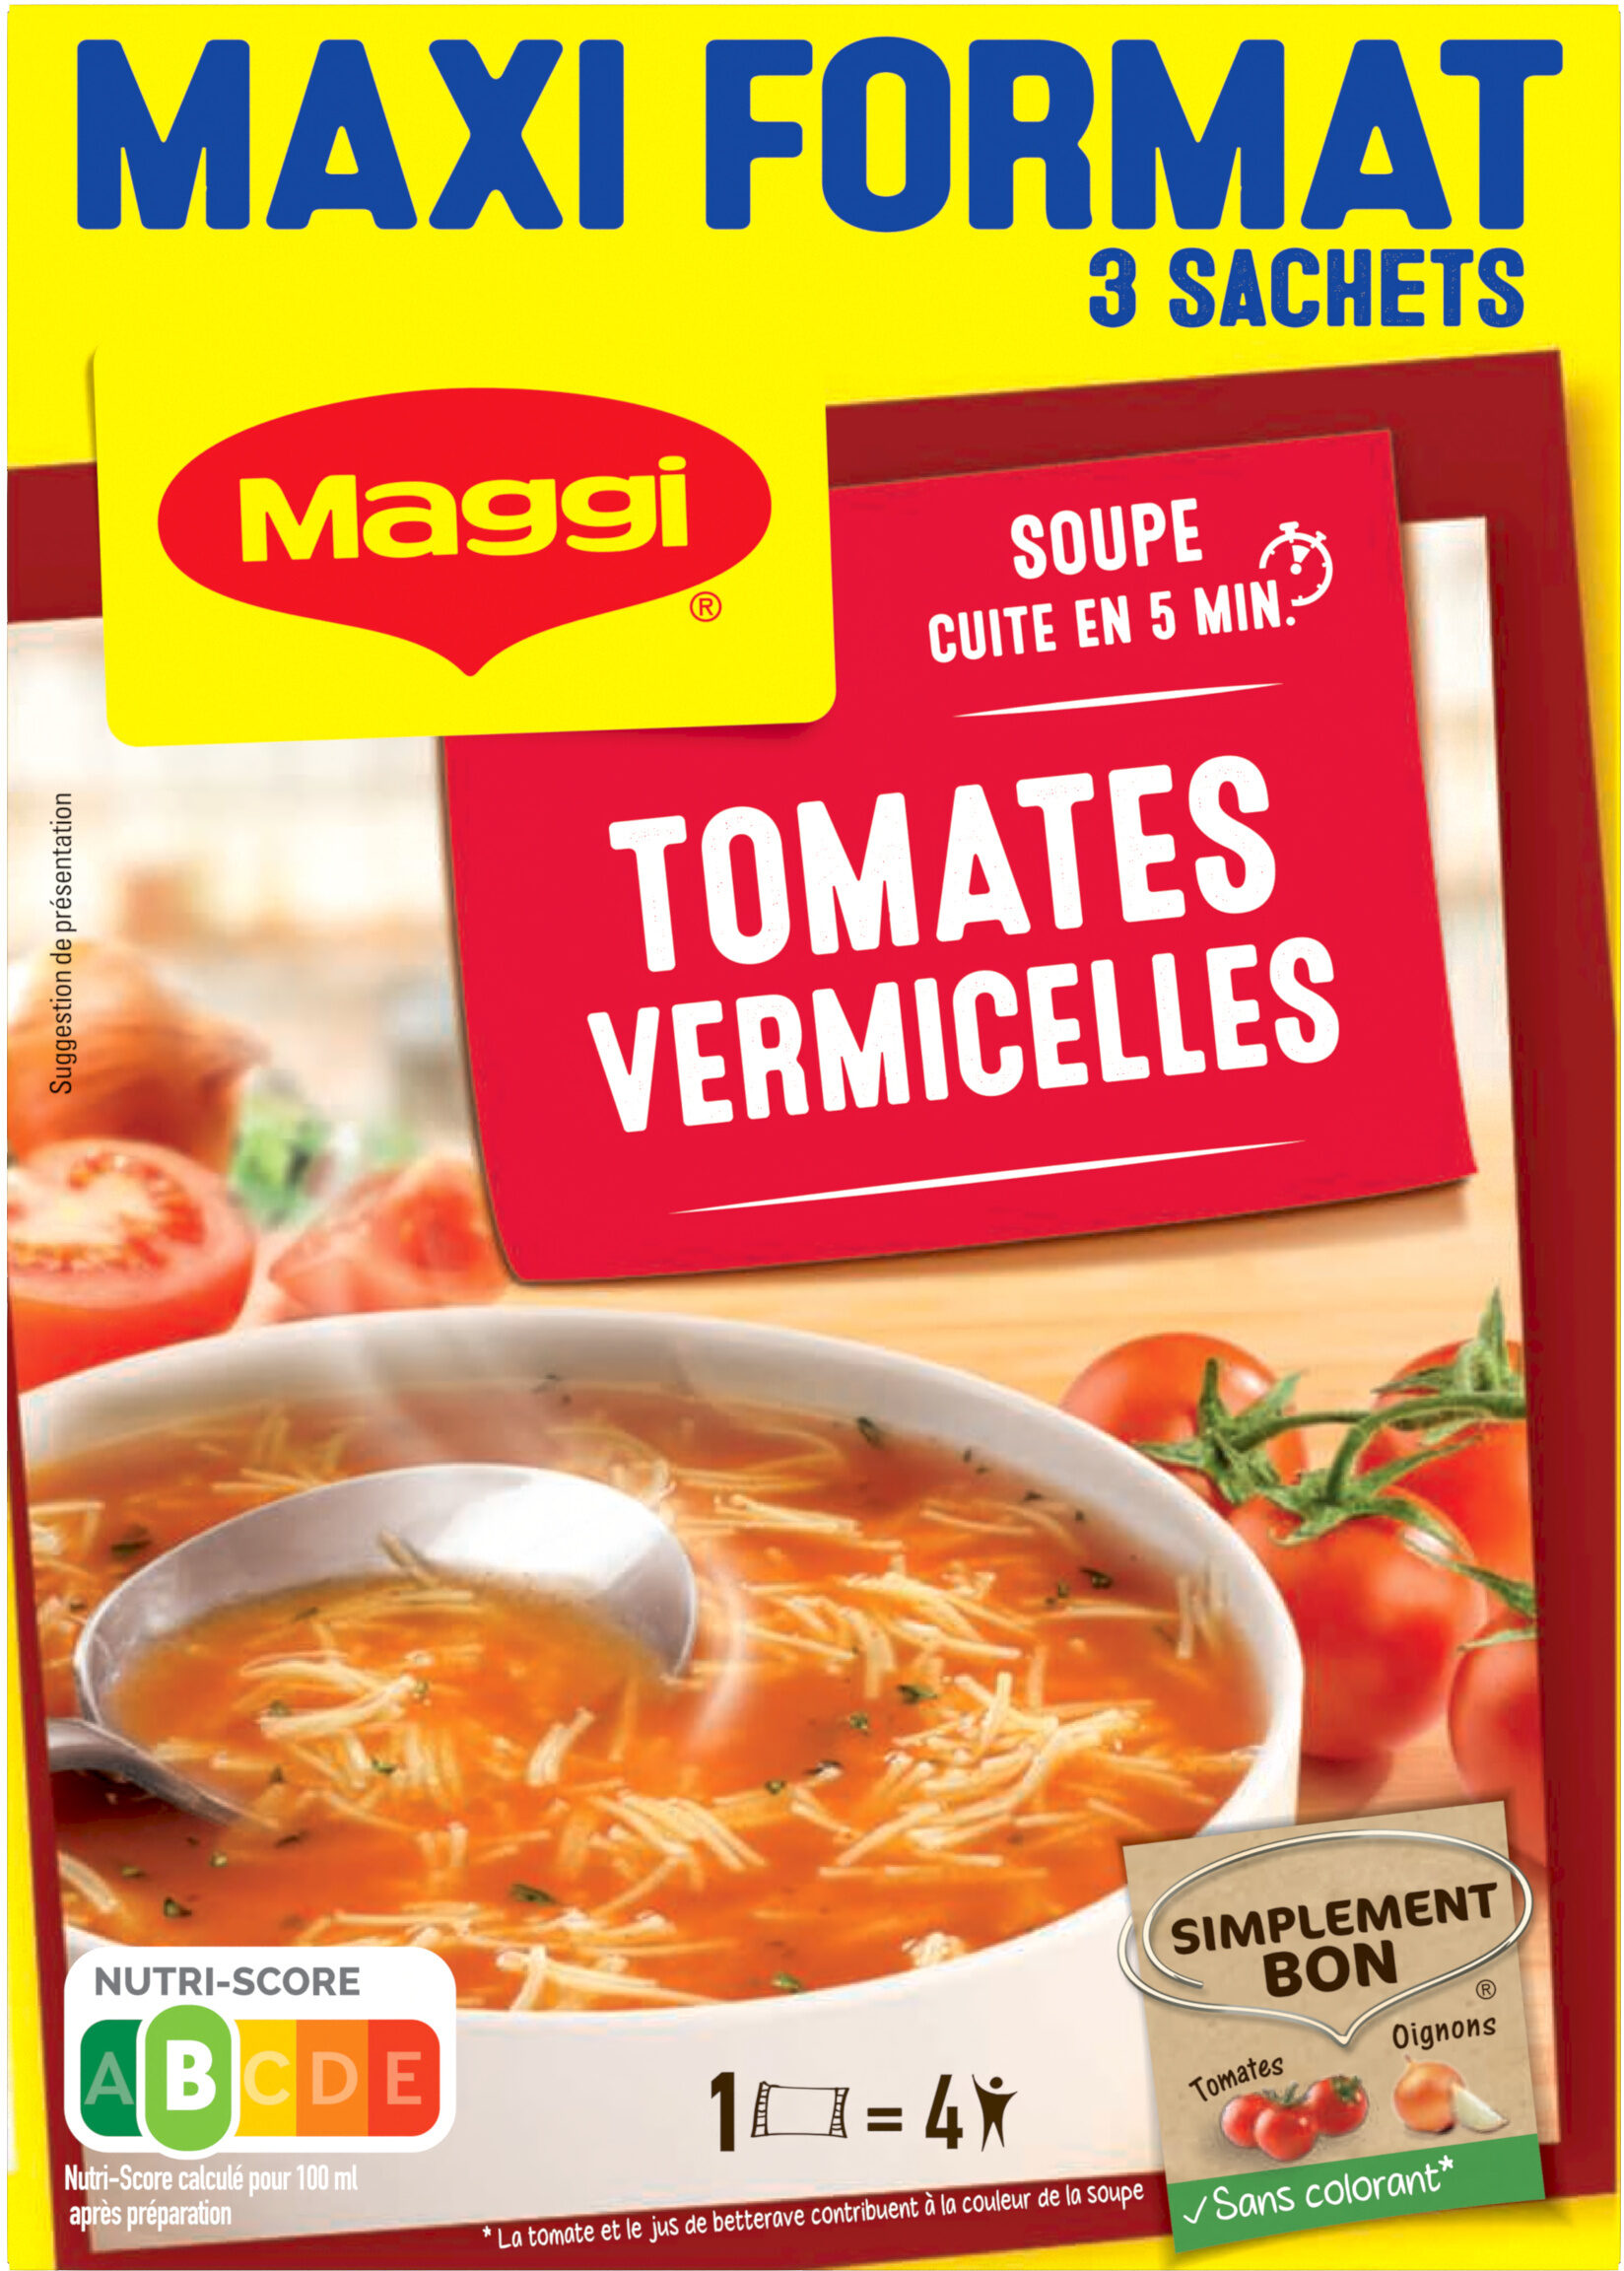 Soupe Tomates Vermicelles Maggi MAXI FORMAT 3 SACHETS - Produkt - fr